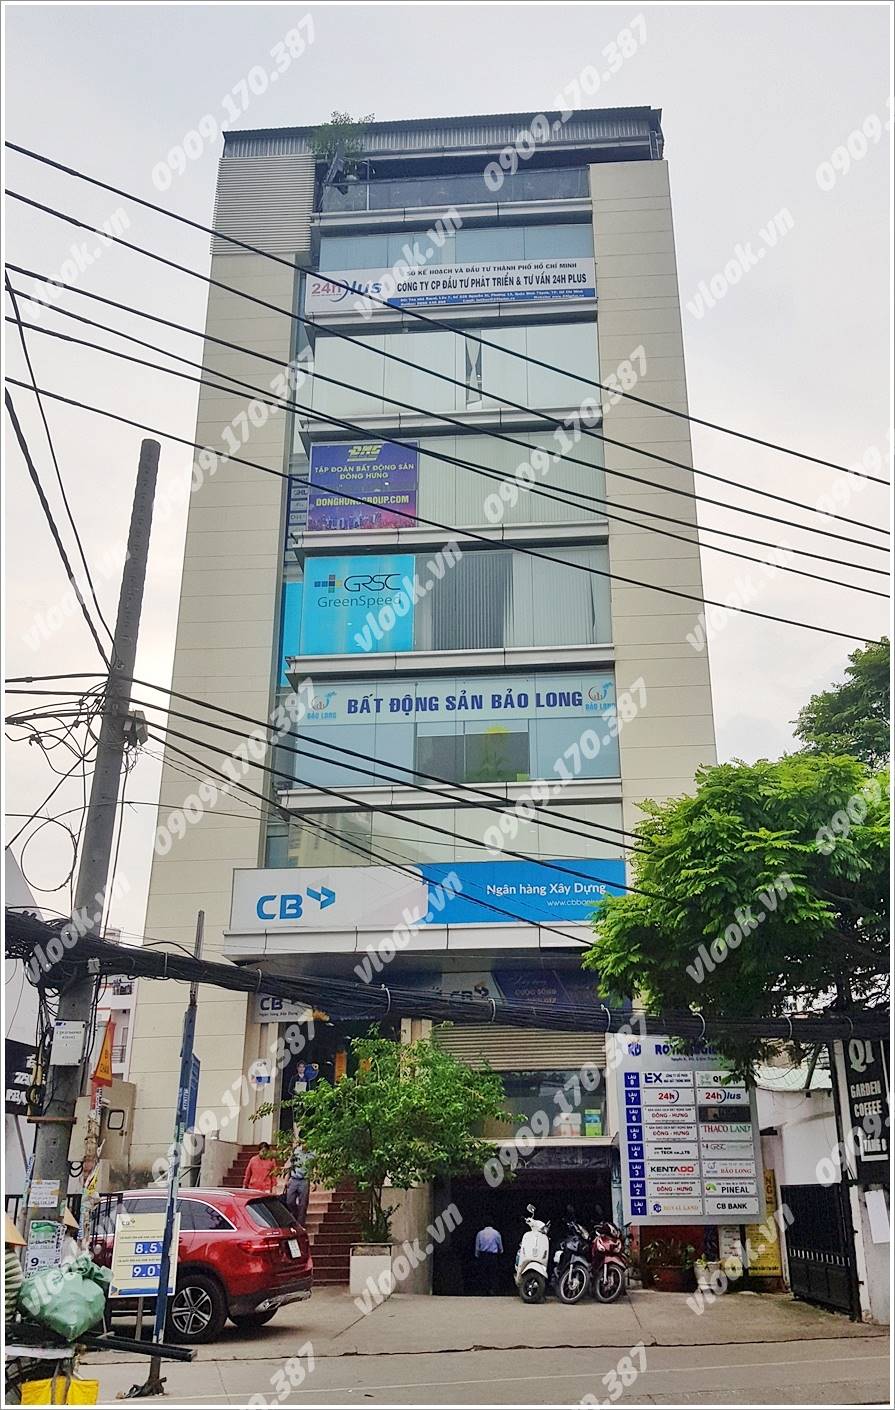 Cao ốc cho thuê văn phòng Nguyễn Xí Building, Quận Bình Thạnh, TPHCM - vlook.vn